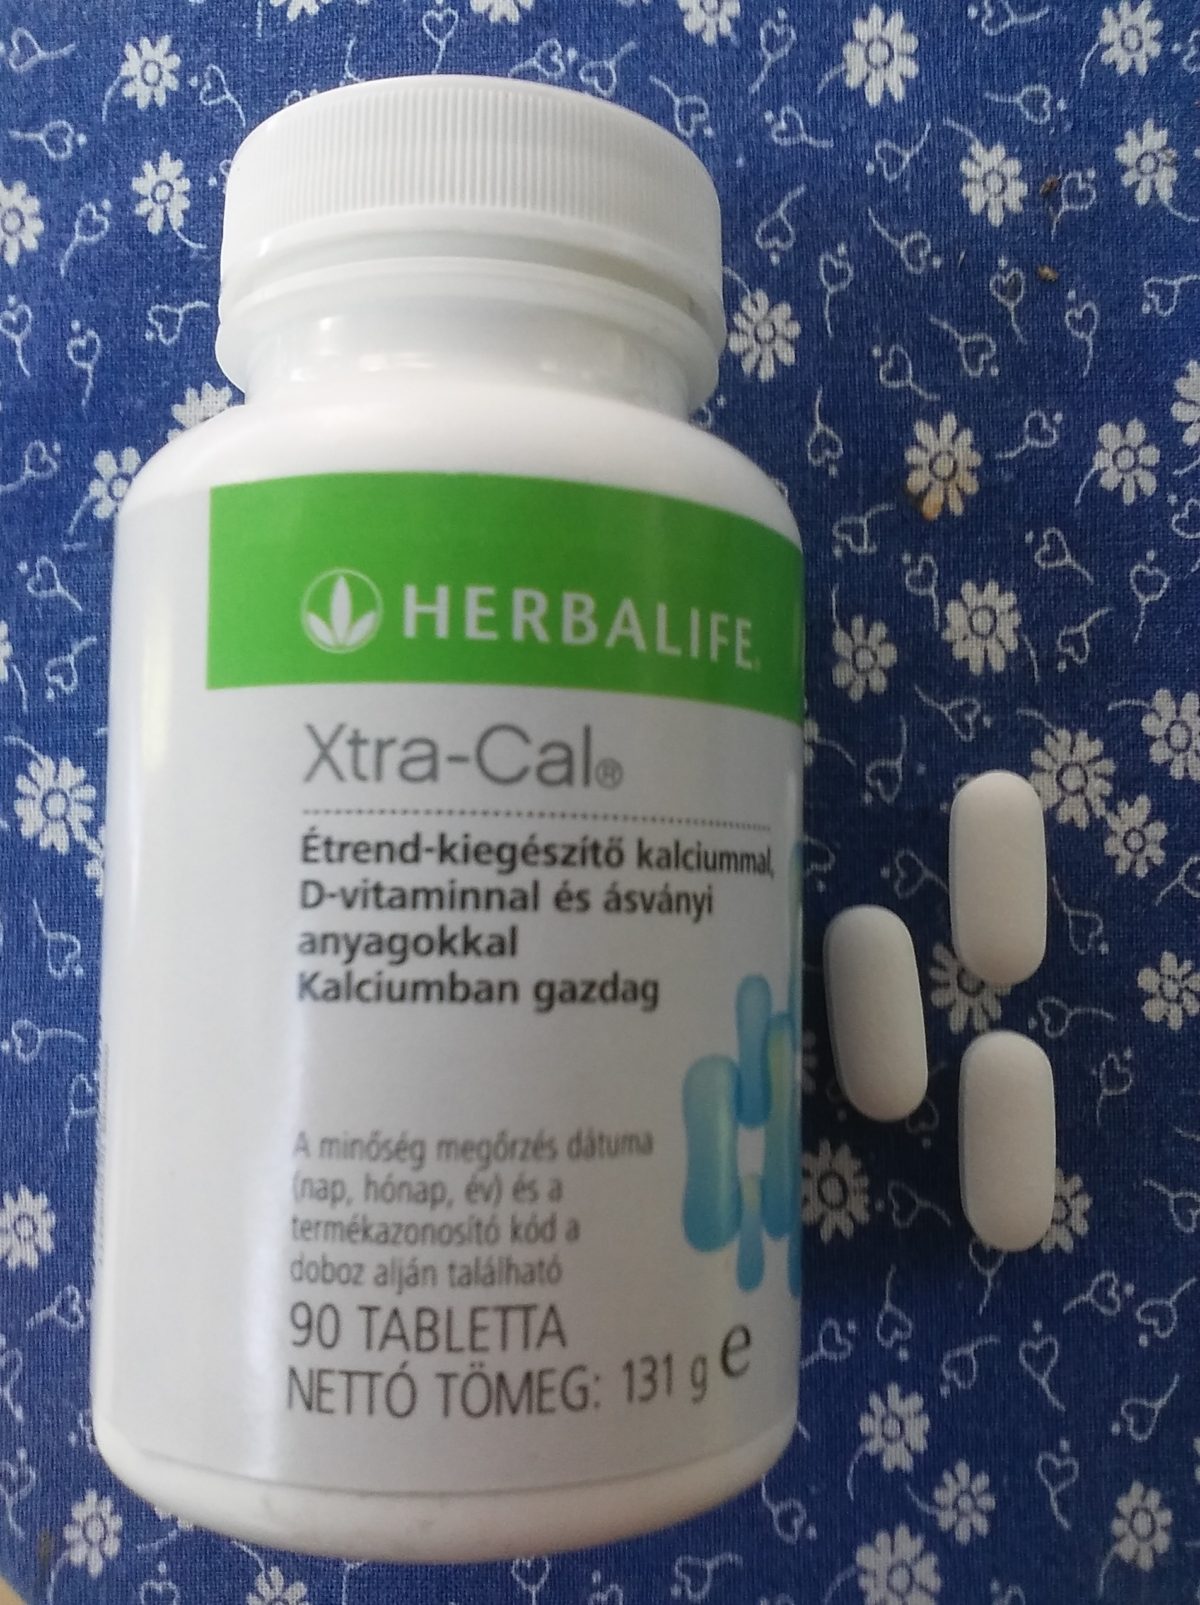 Herbalife Xtra-Cal étrend-kiegészítő kalciummal D-vitaminnal és ásványi anyagokkal